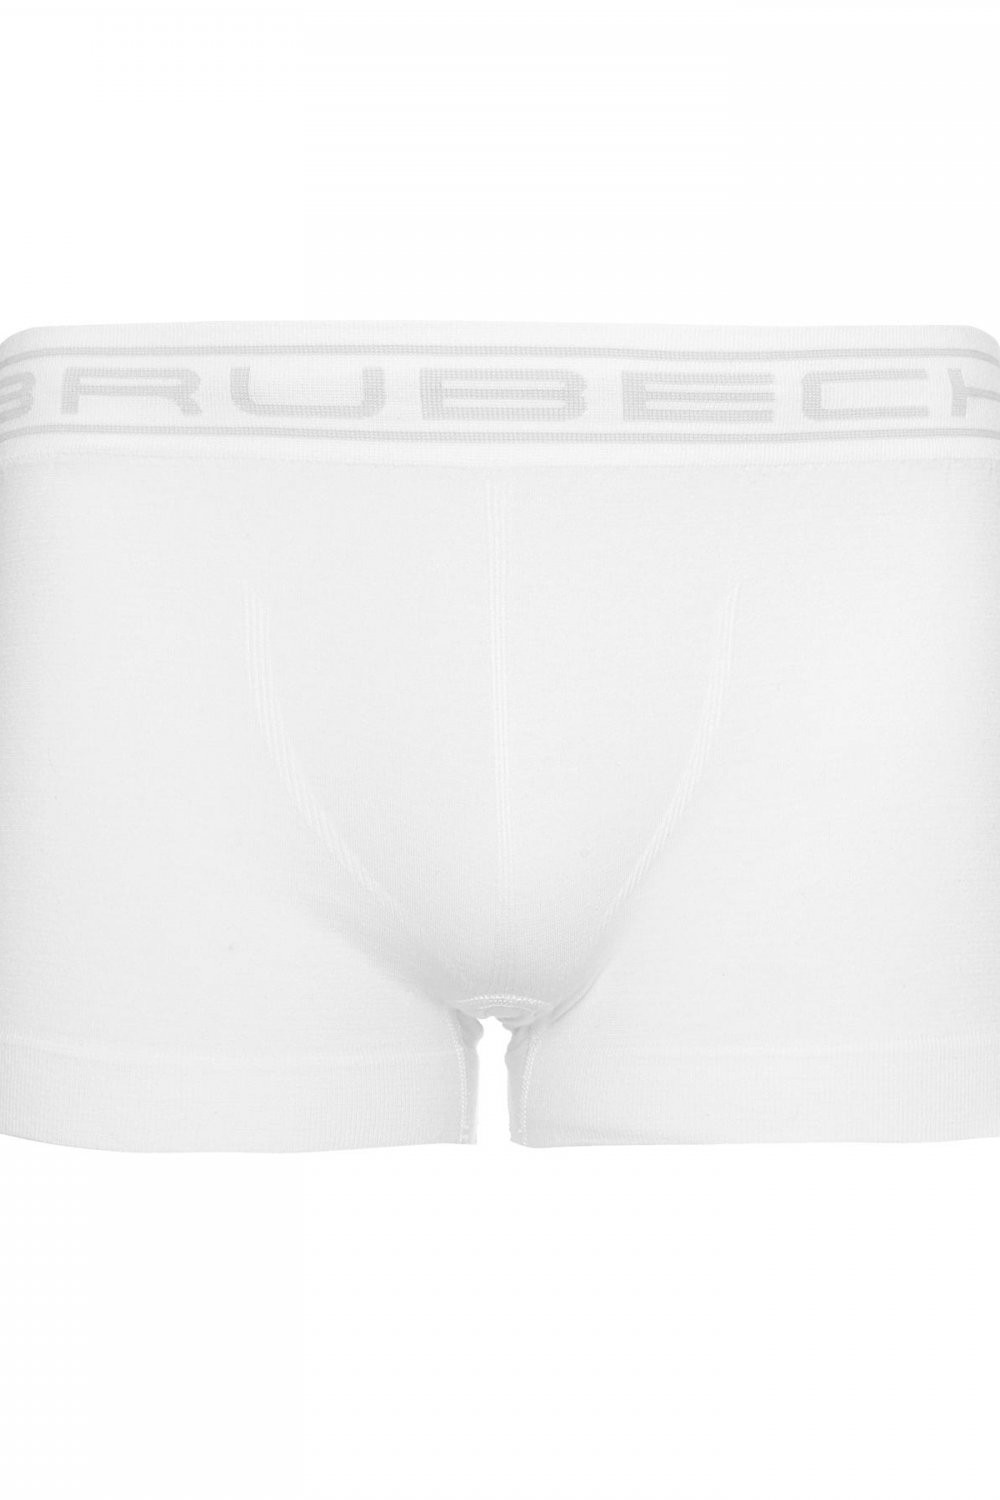 Pánské boxerky model 16247163 white - Brubeck Barva: Bílá, Velikost: S